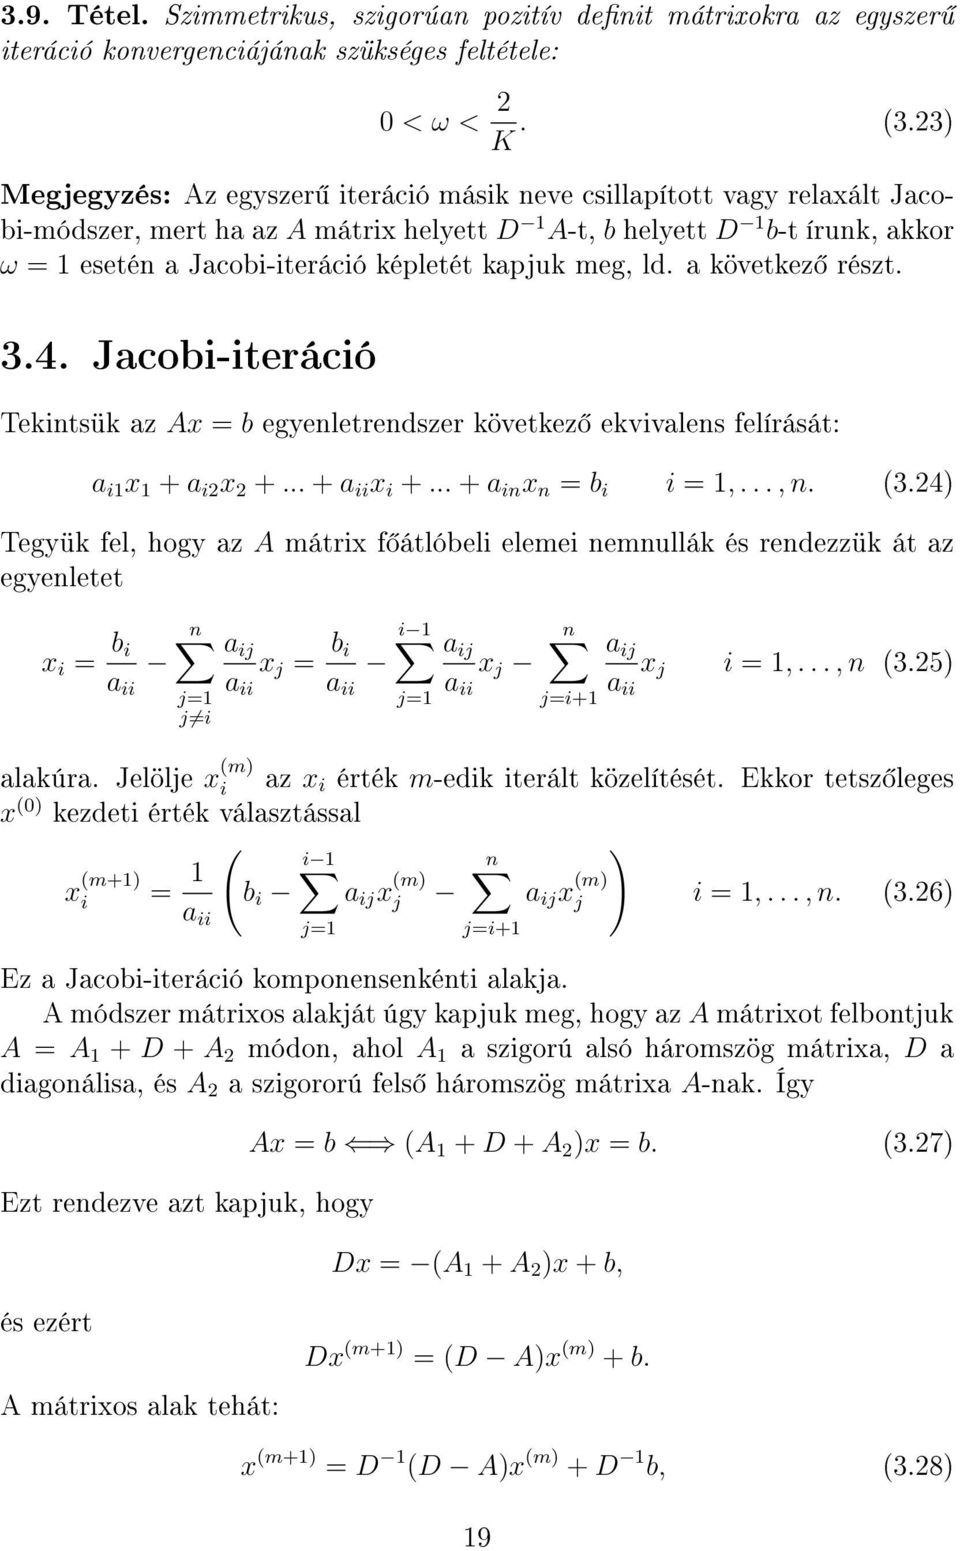 kapjuk meg, ld. a következ részt. 3.4. Jacobi-iteráció Tekintsük az Ax = b egyenletrendszer következ ekvivalens felírását: a i1 x 1 + a i2 x 2 +... + a ii x i +... + a in x n = b i i = 1,..., n. (3.